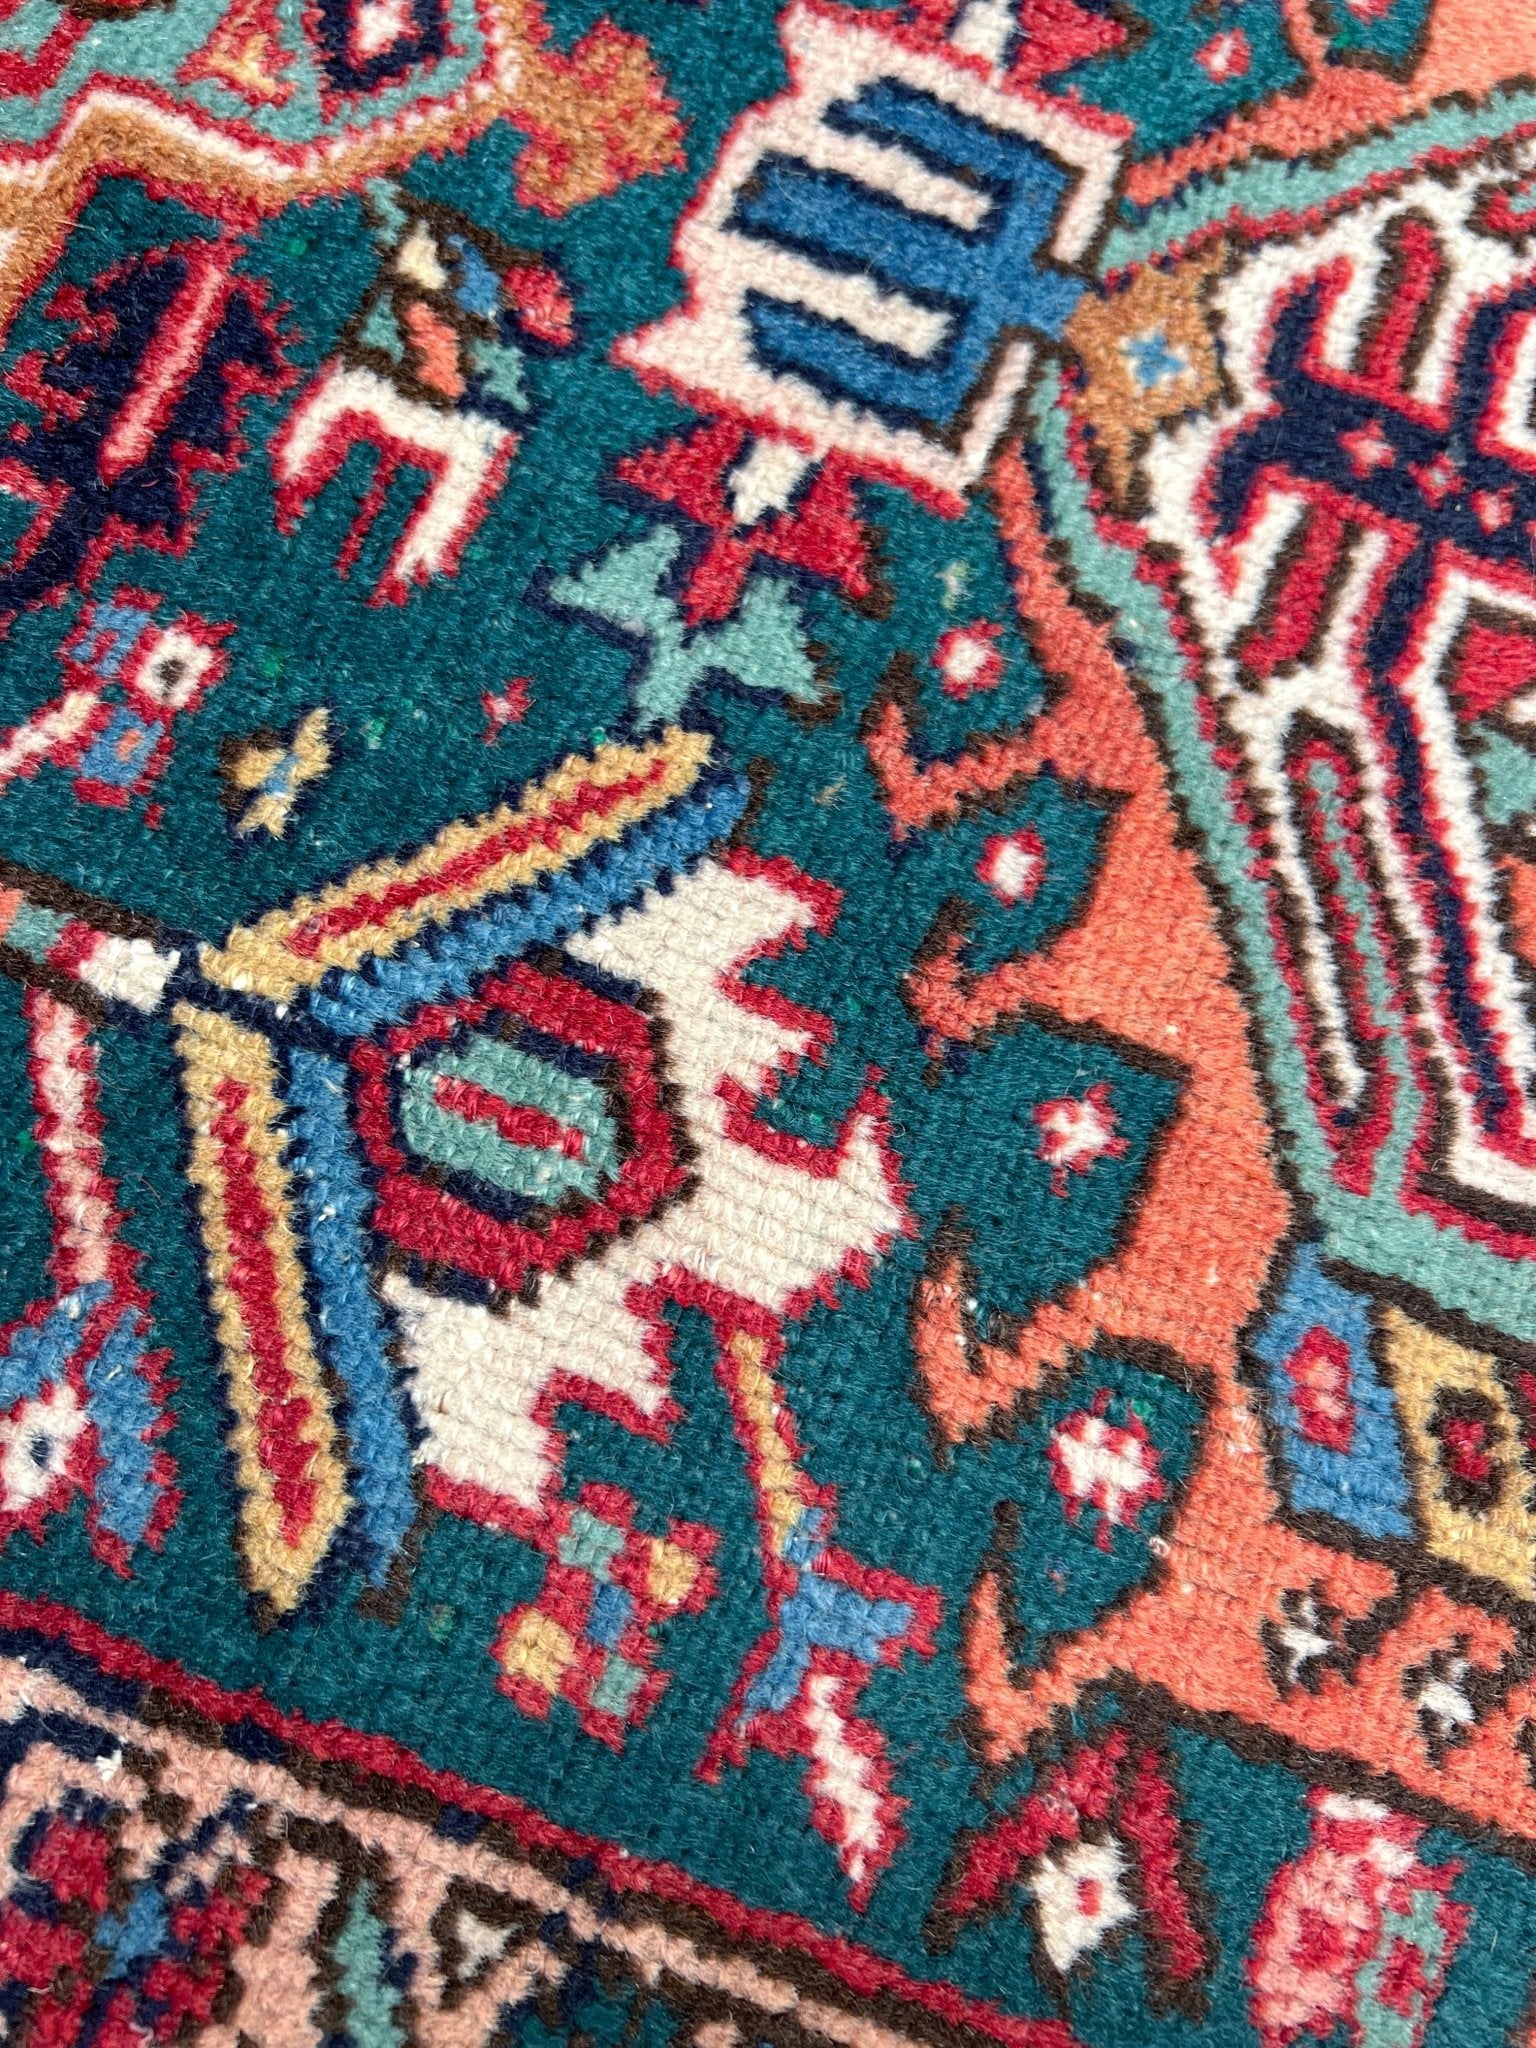 large karadja heriz persian aera rug. Oriental rug shop san francisco bay area. Buy handmade wool vintage rug online